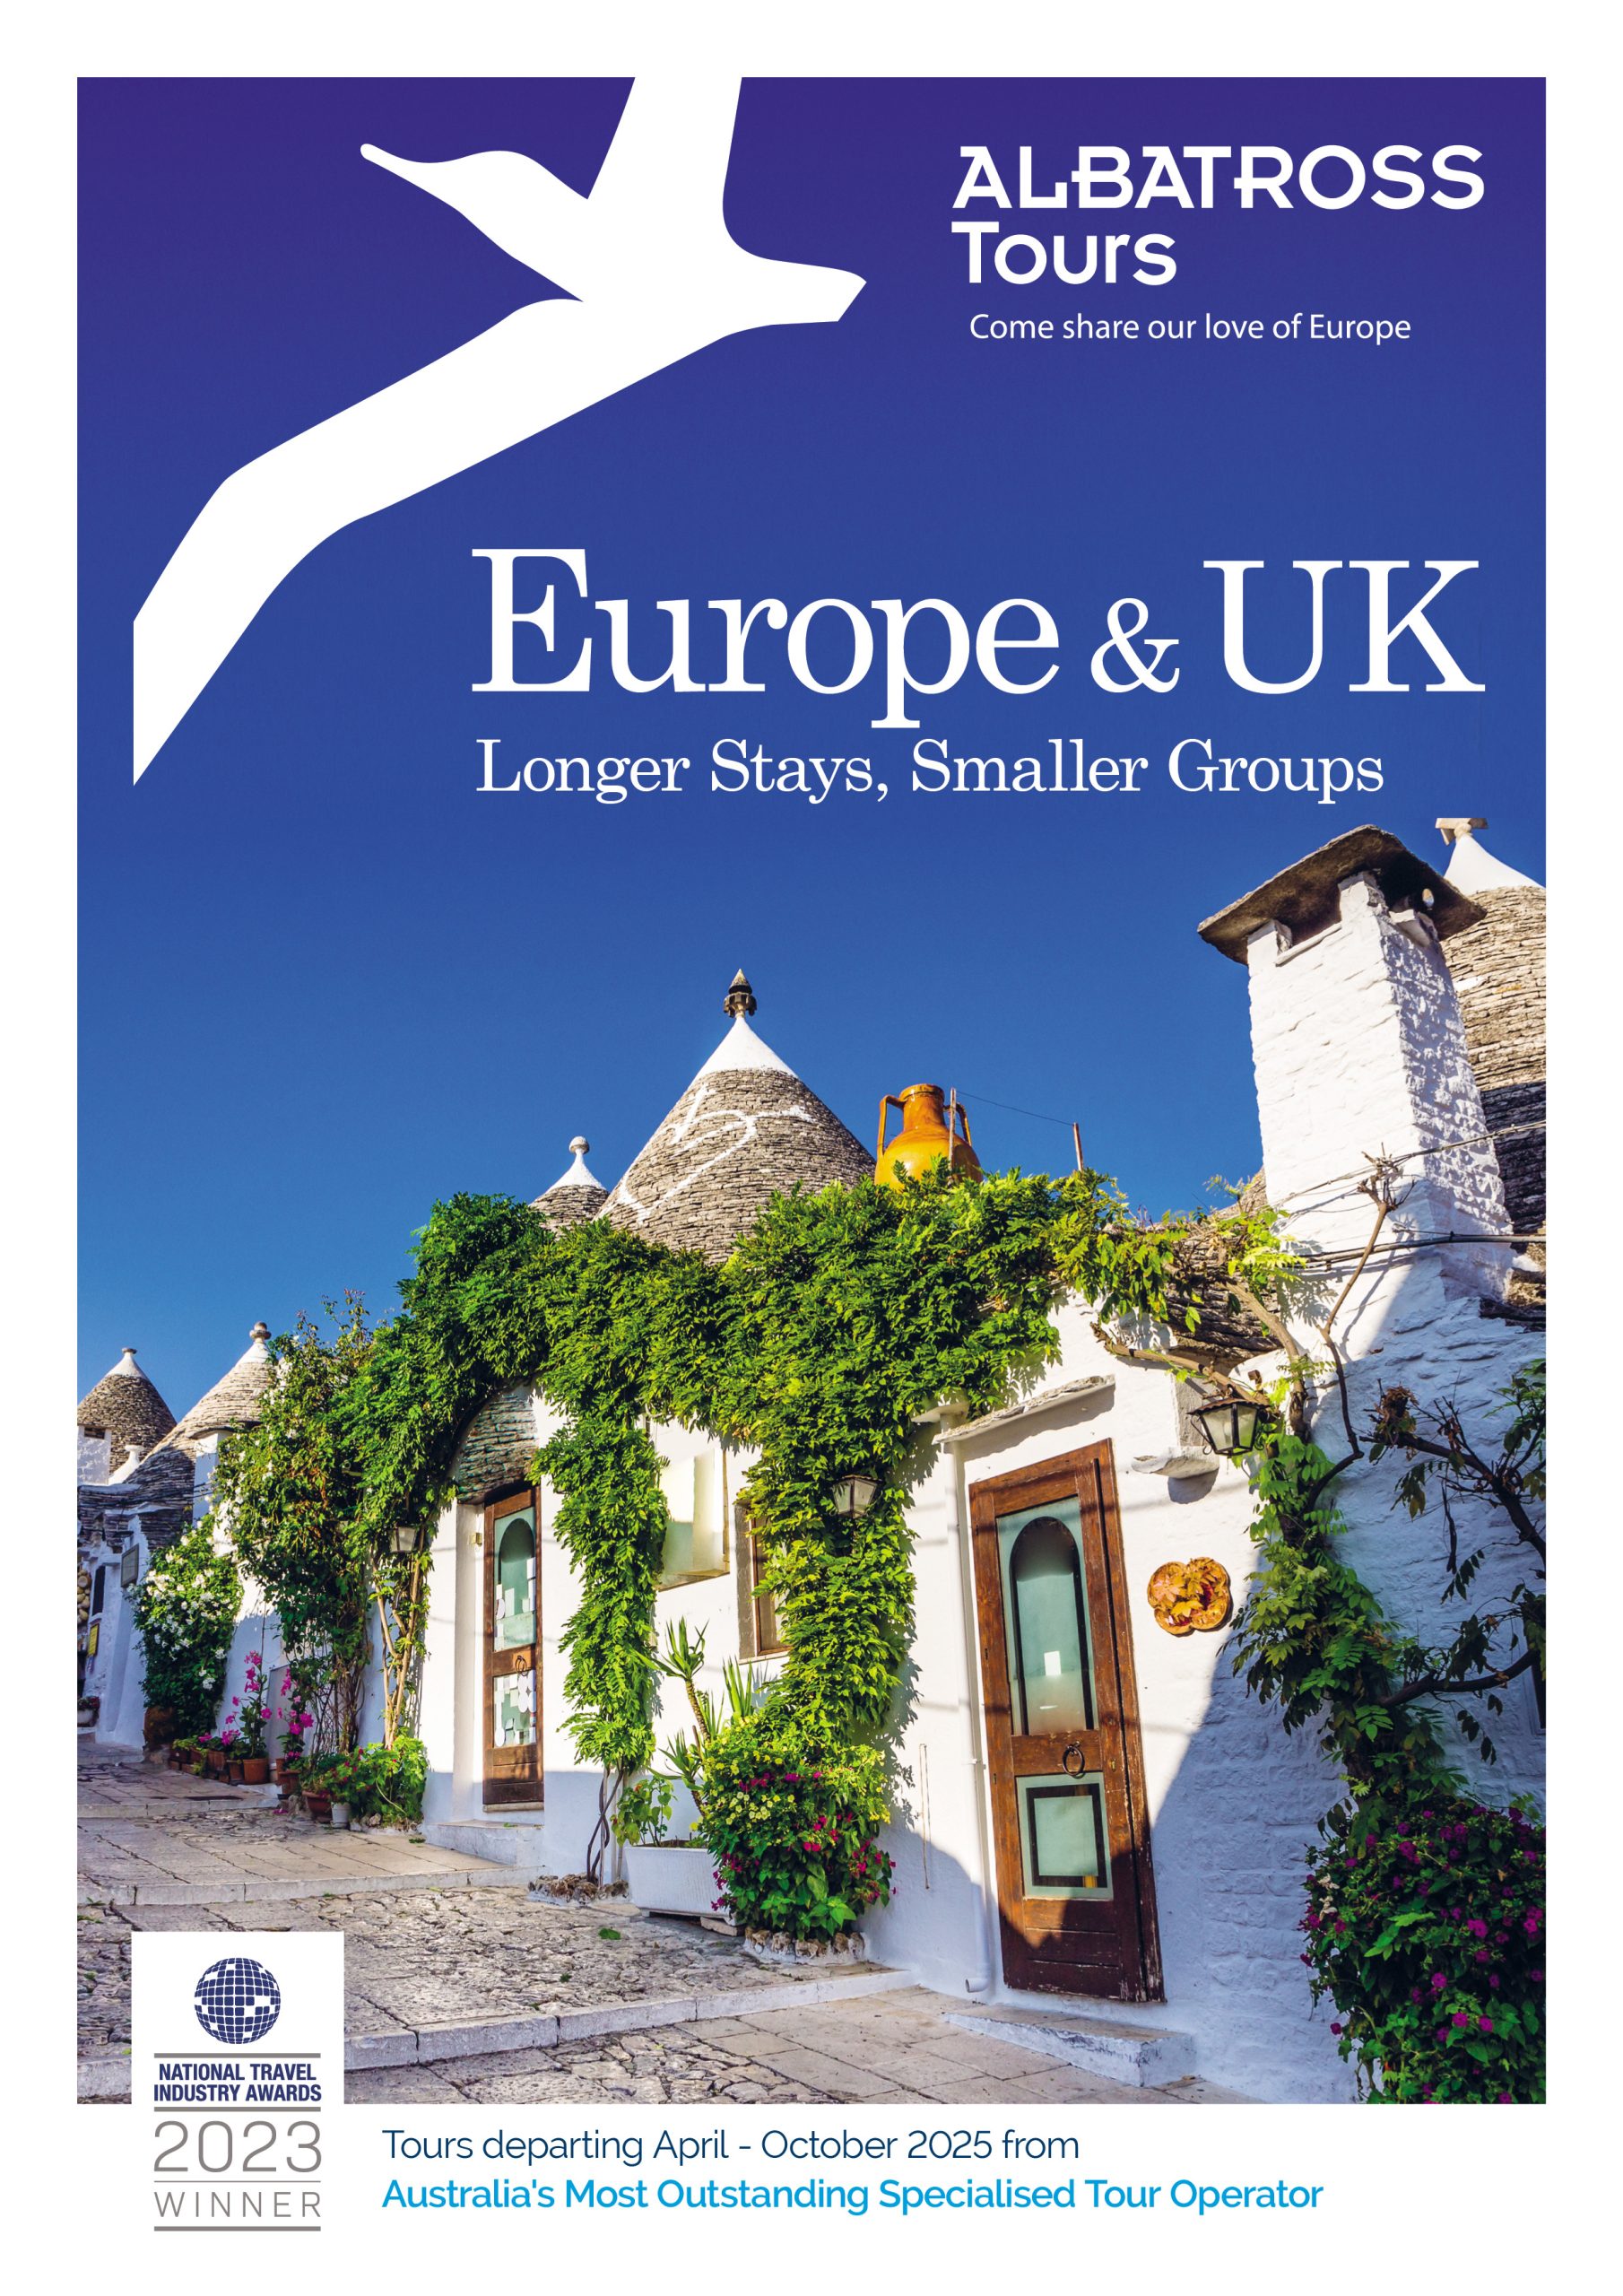 brochure visit europe